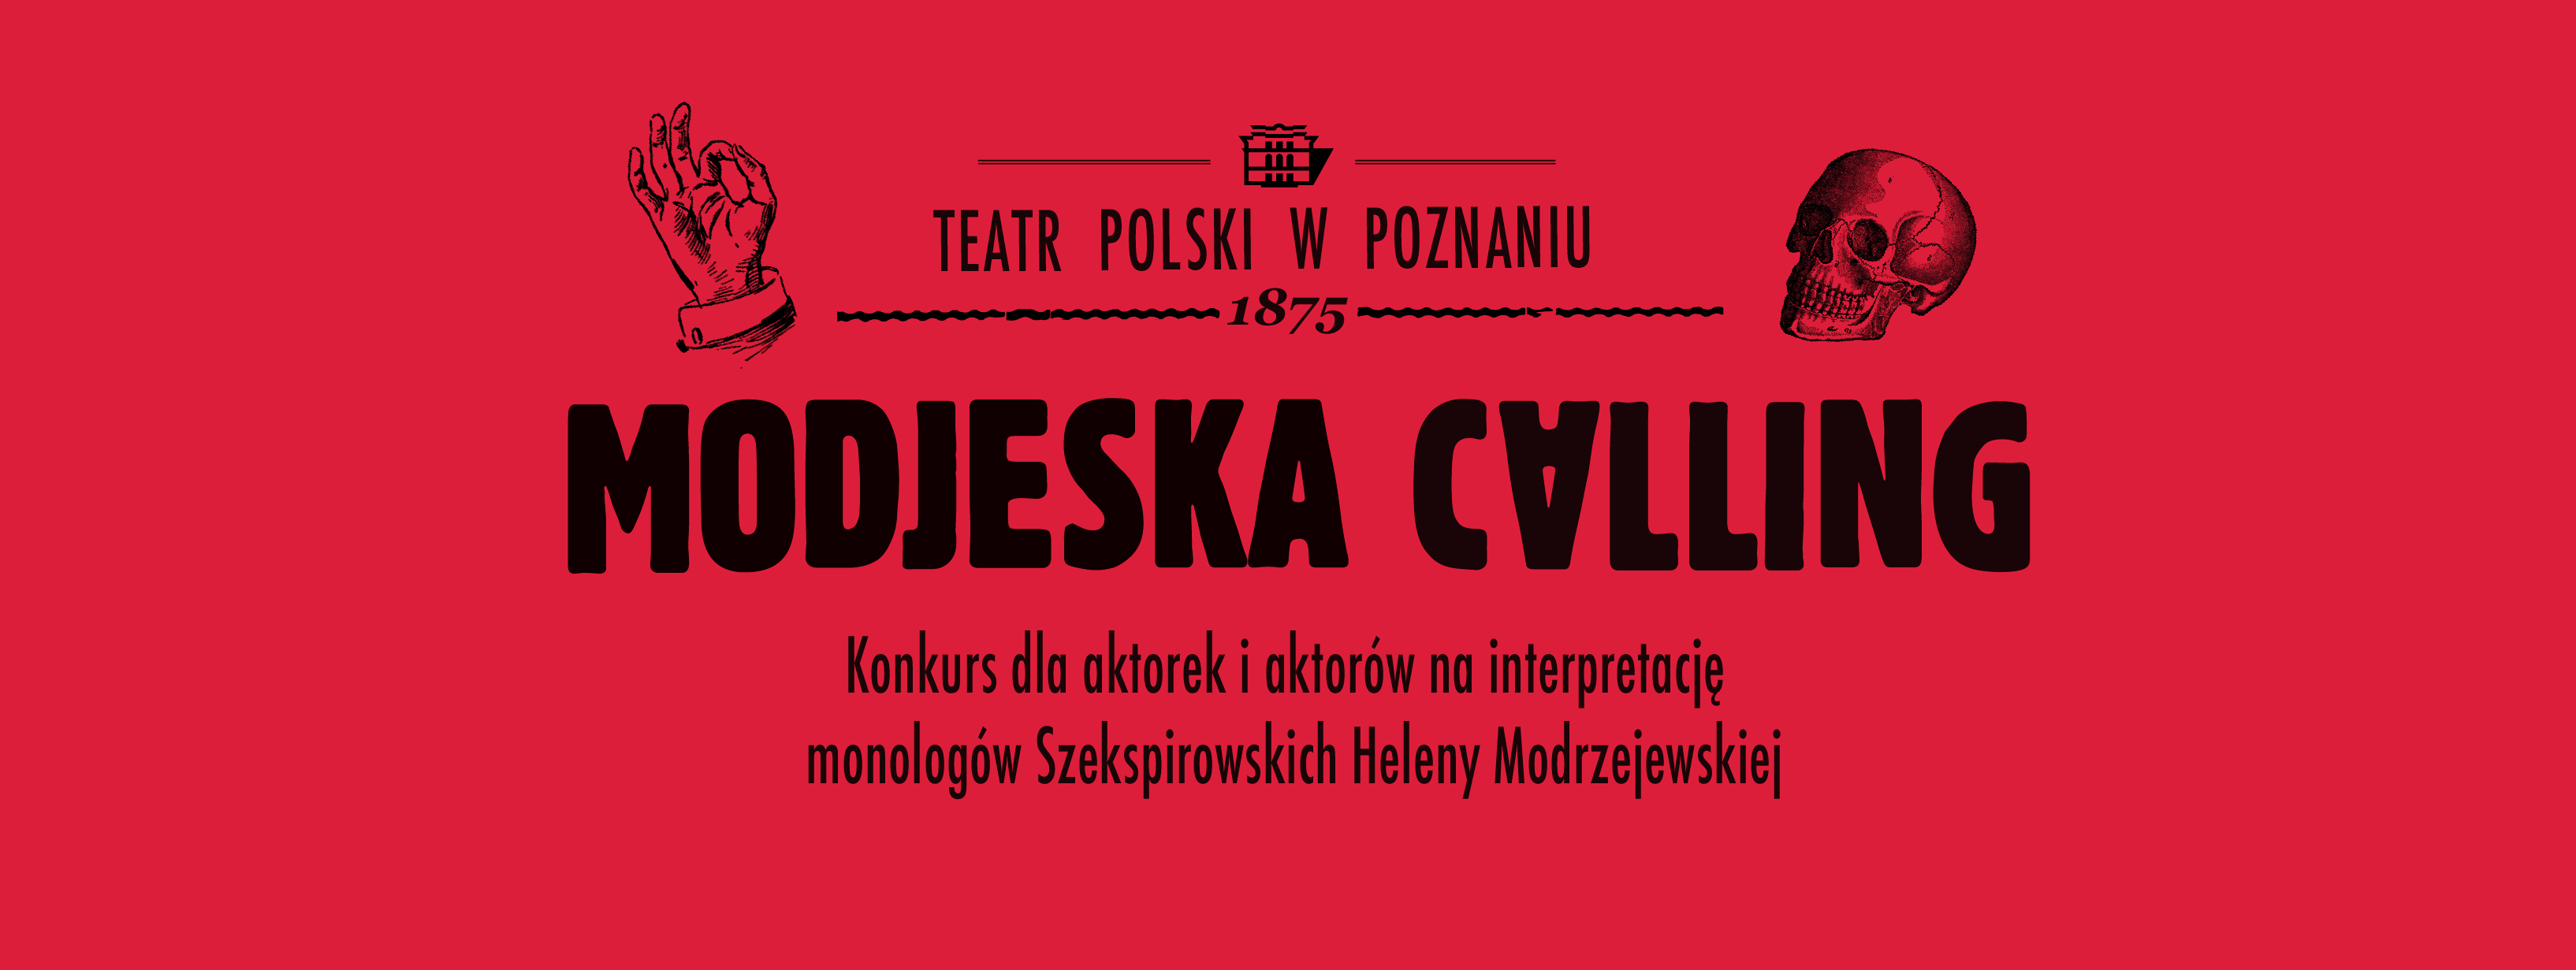 modjeska calling 2021 - teatr-polski.pl